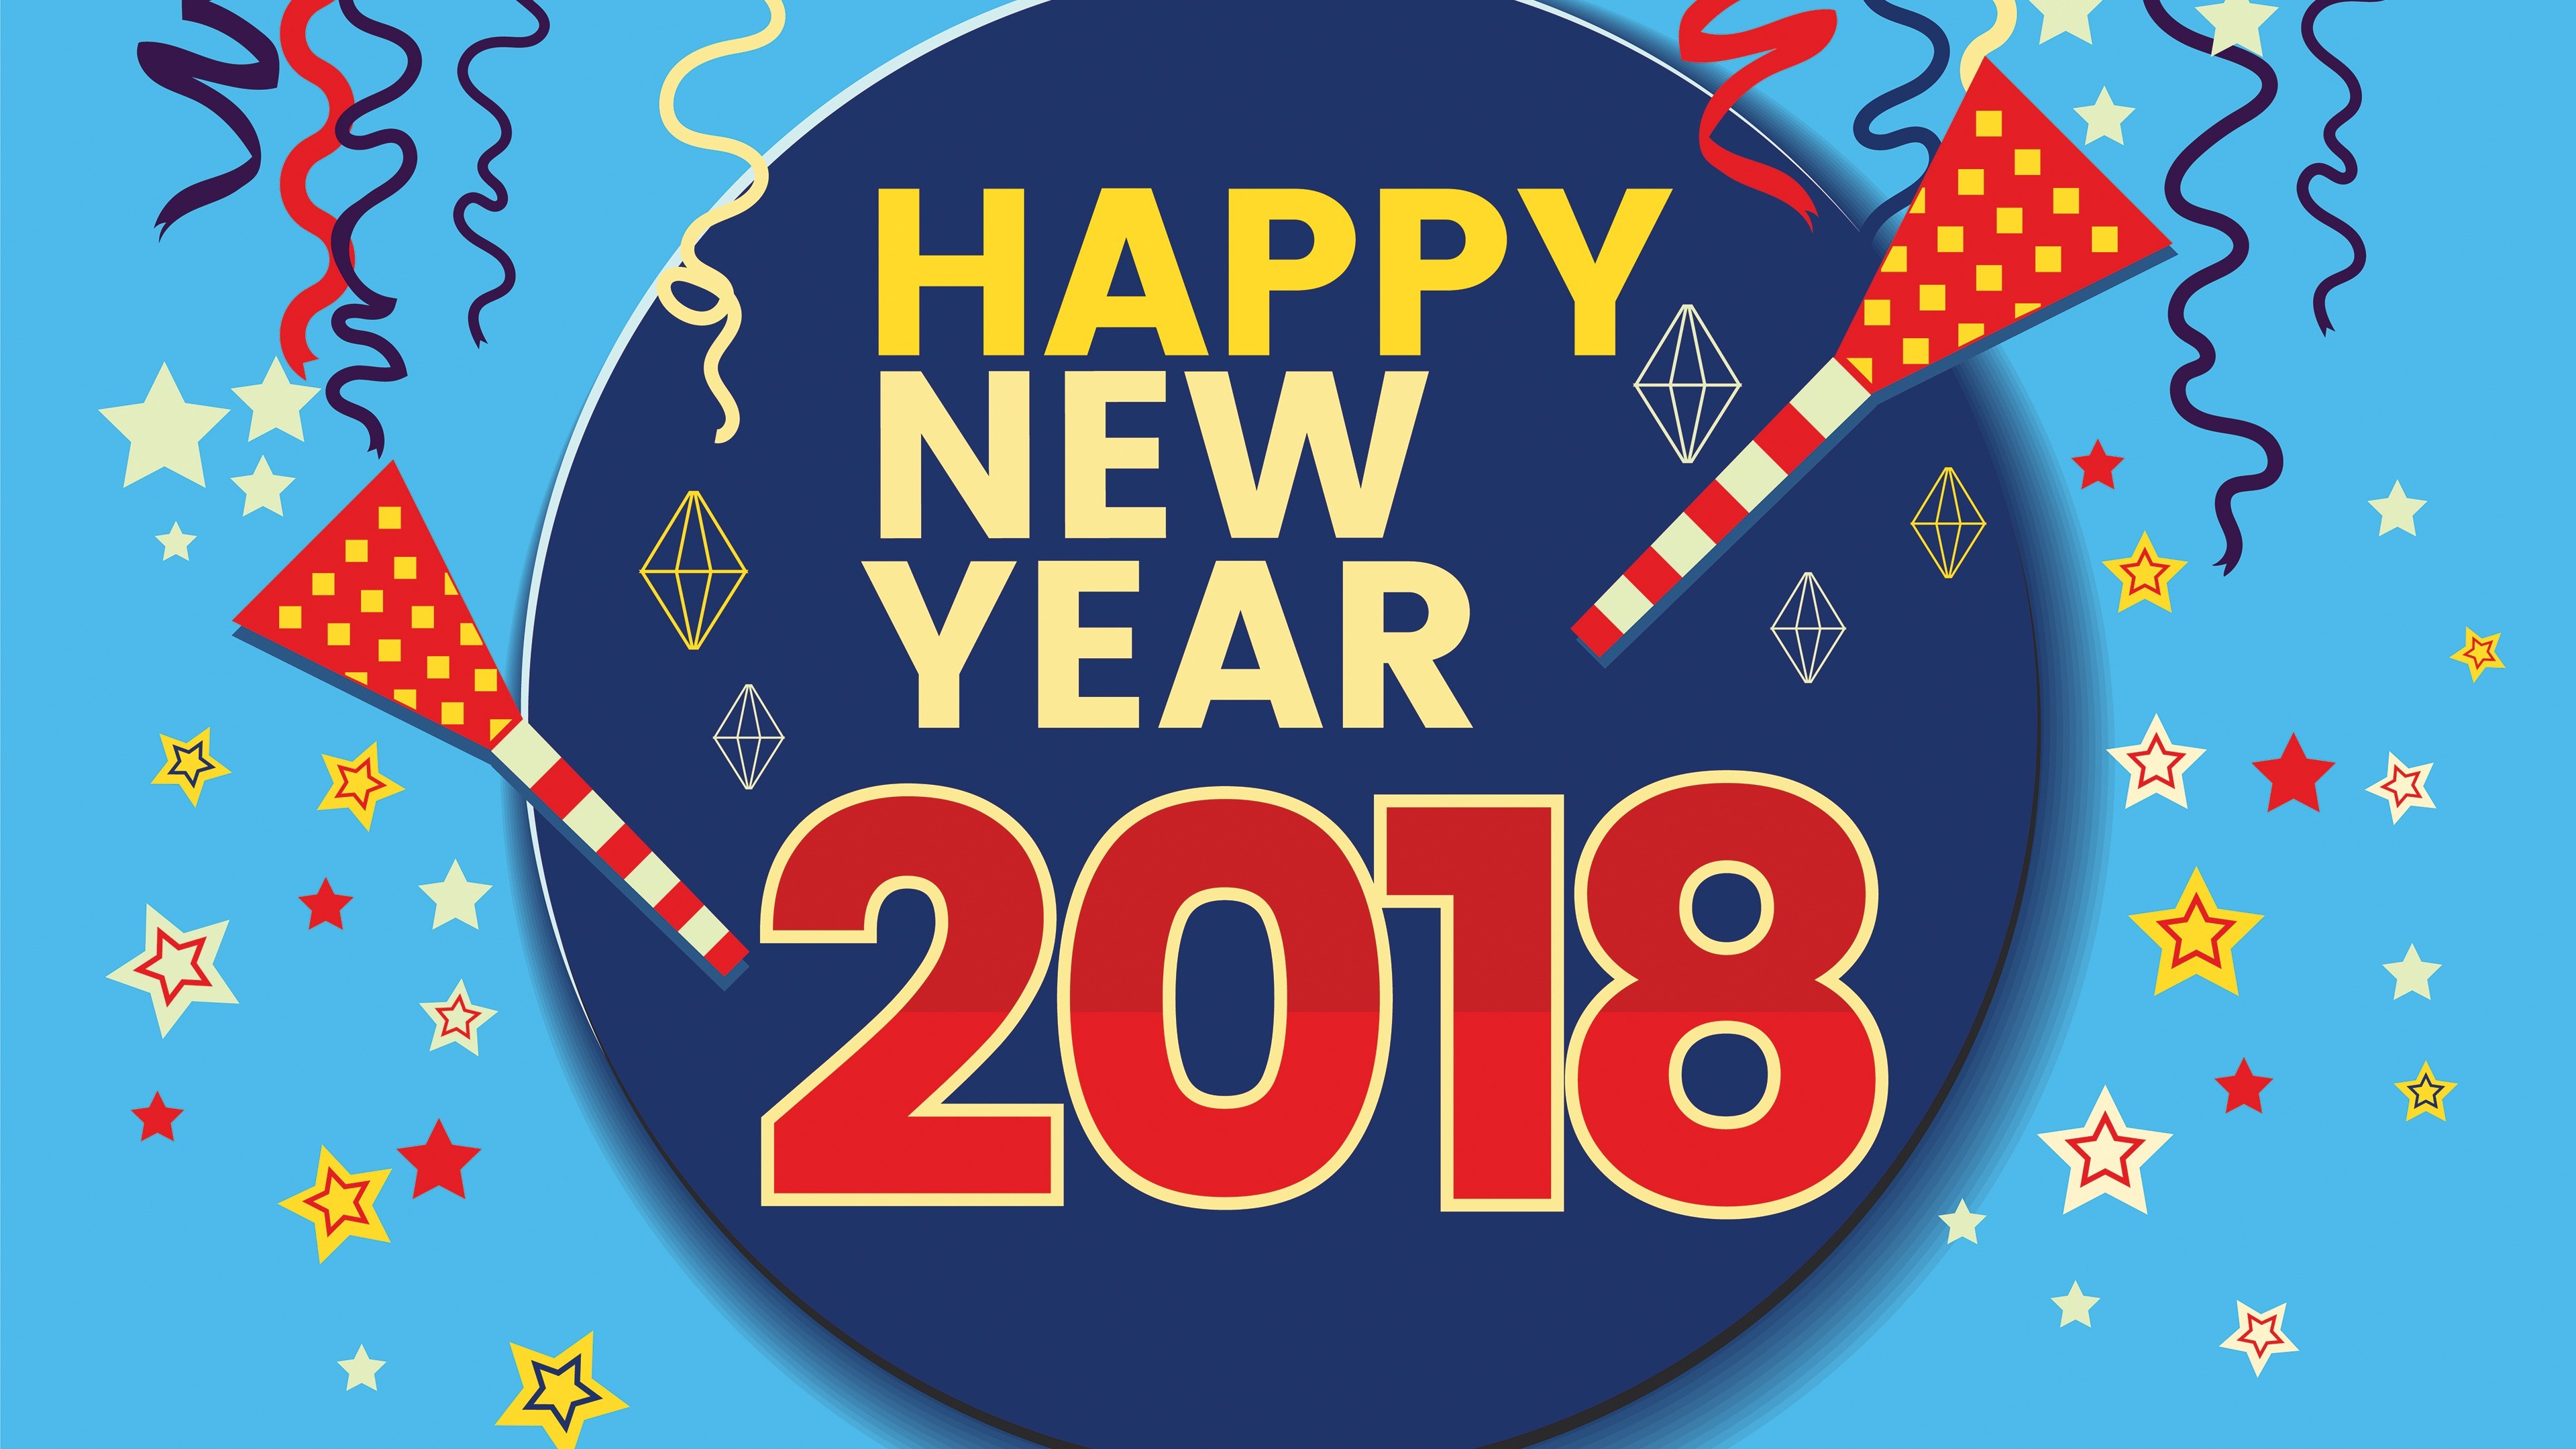 3840x2160 2018 New Year 4K HD Wallpaper  Retro